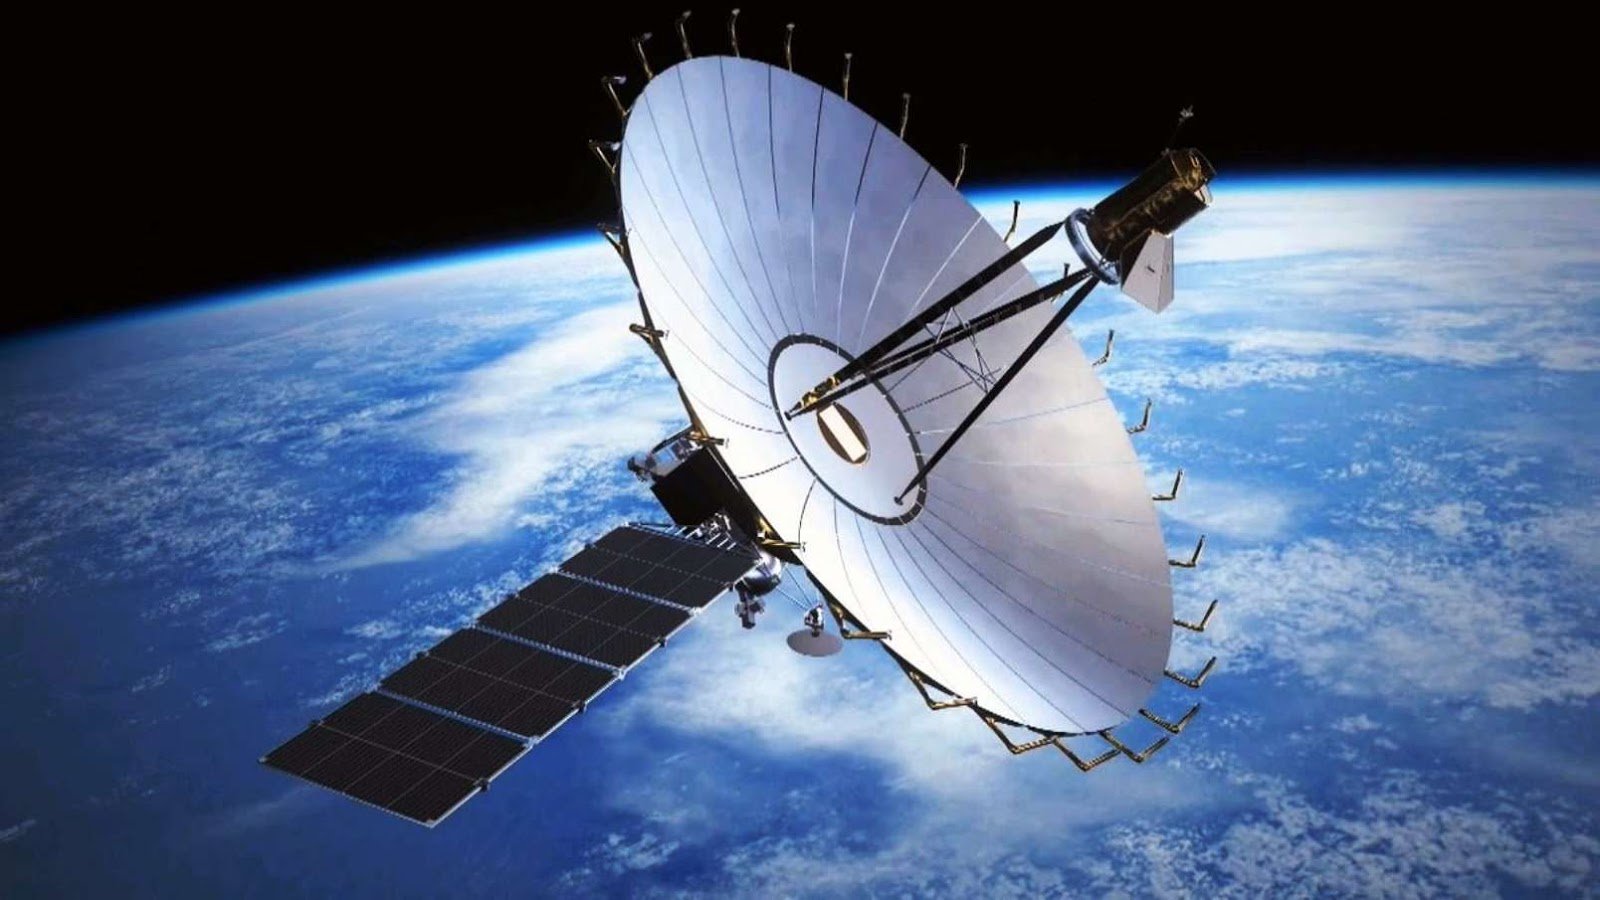 Spektr-R, satélite transportado em 2011 pelo foguete.